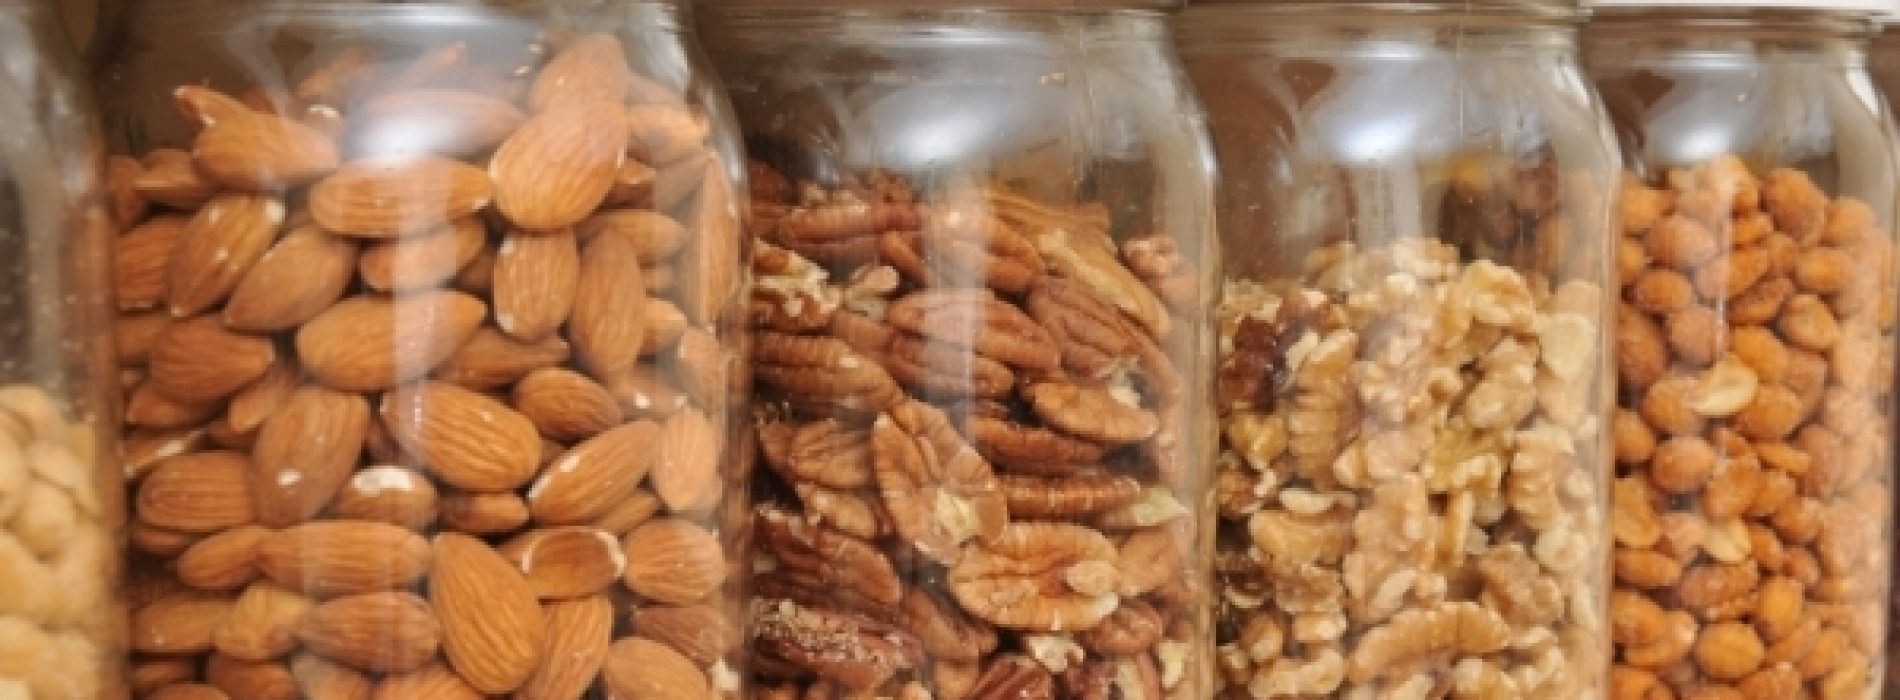 Gezond noten eten en bereiden – zonder veel fytinezuur